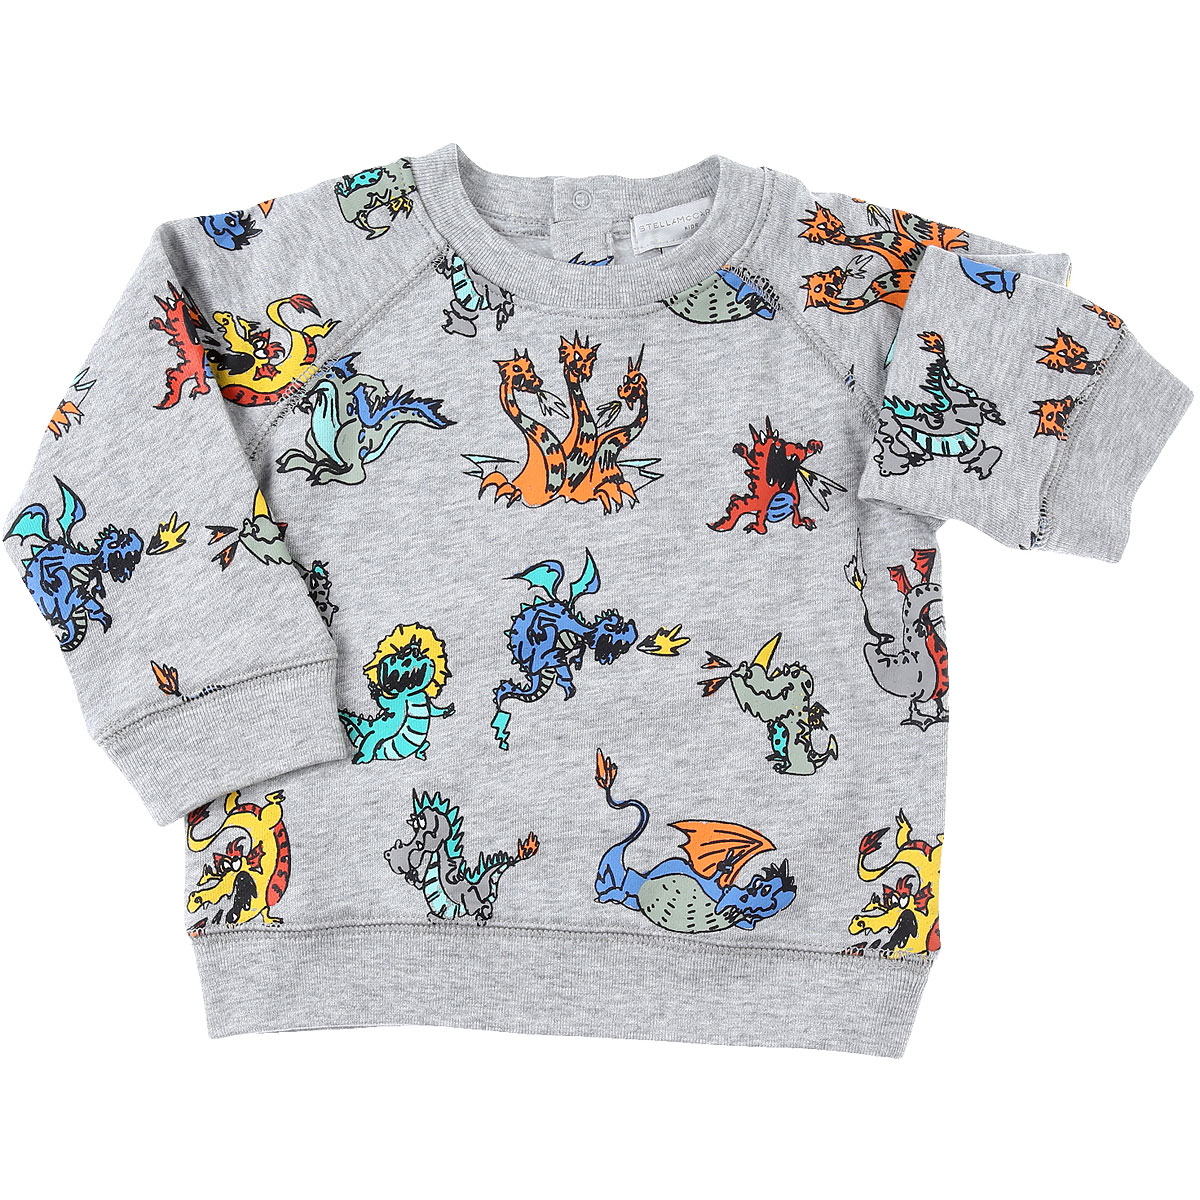 Stella McCartney Baby Sweatshirt & Kapuzenpullover für Jungen Günstig im Sale, Grau, Baumwolle, 2017, 18M 6M 9M